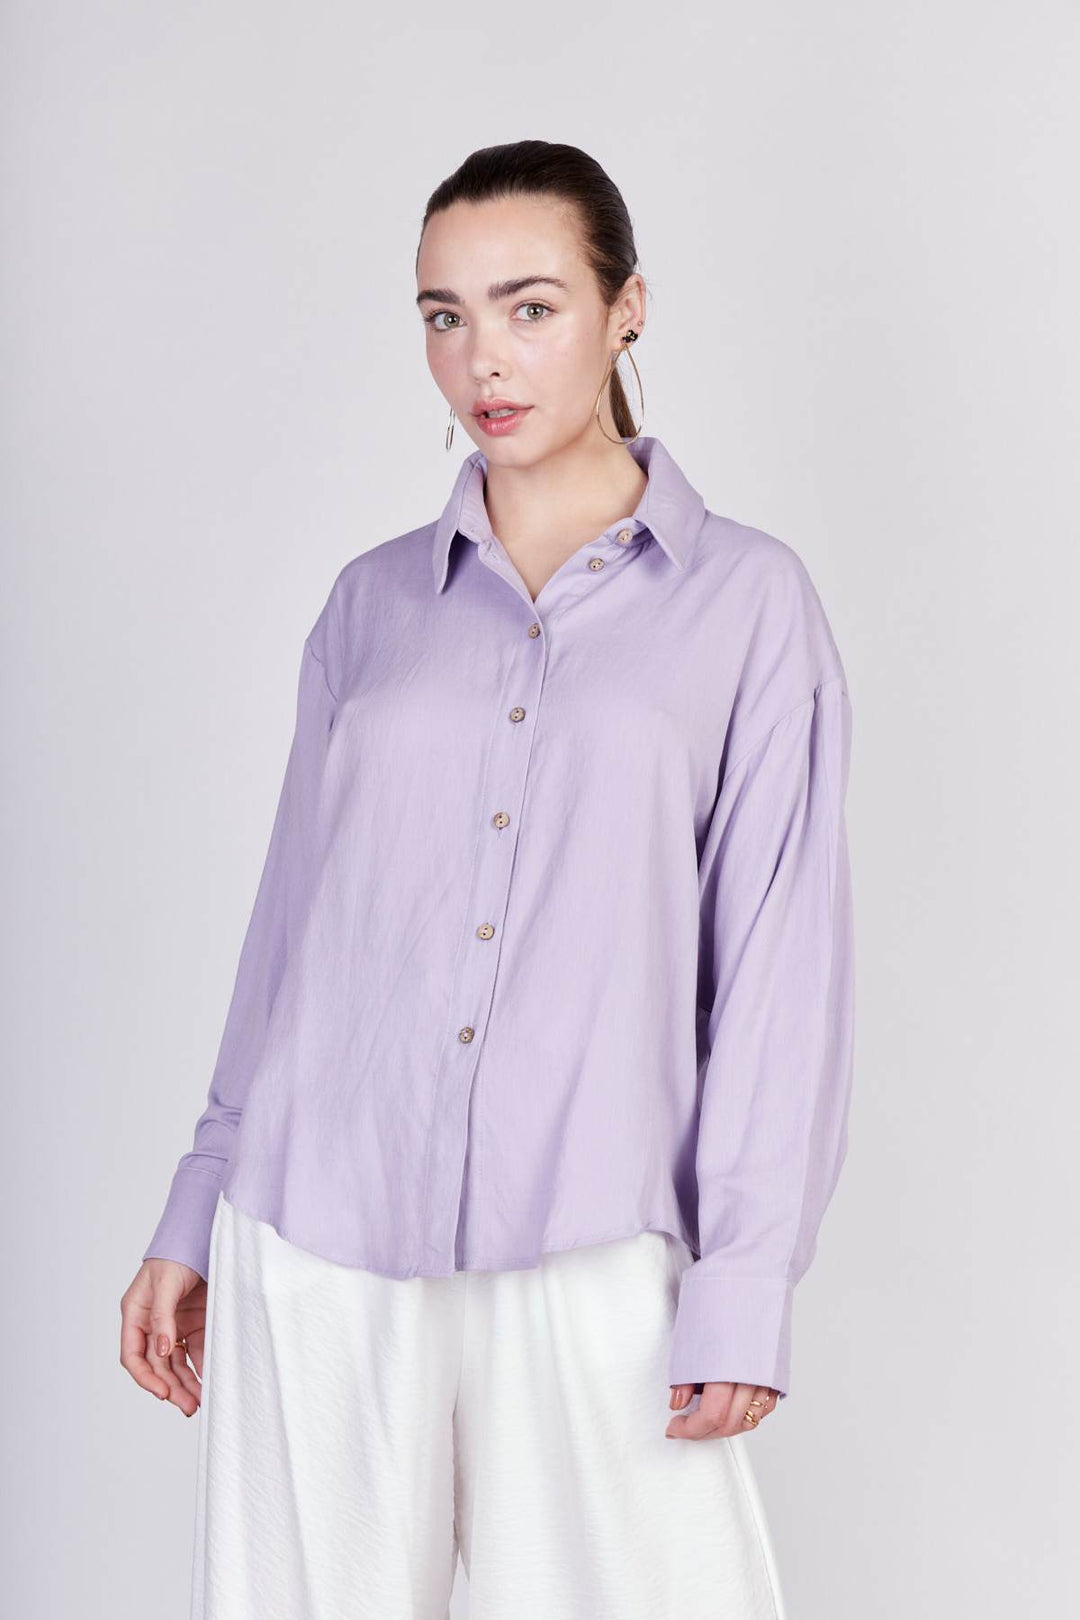 חולצת דרים בצבע סגול - Neta Efrati